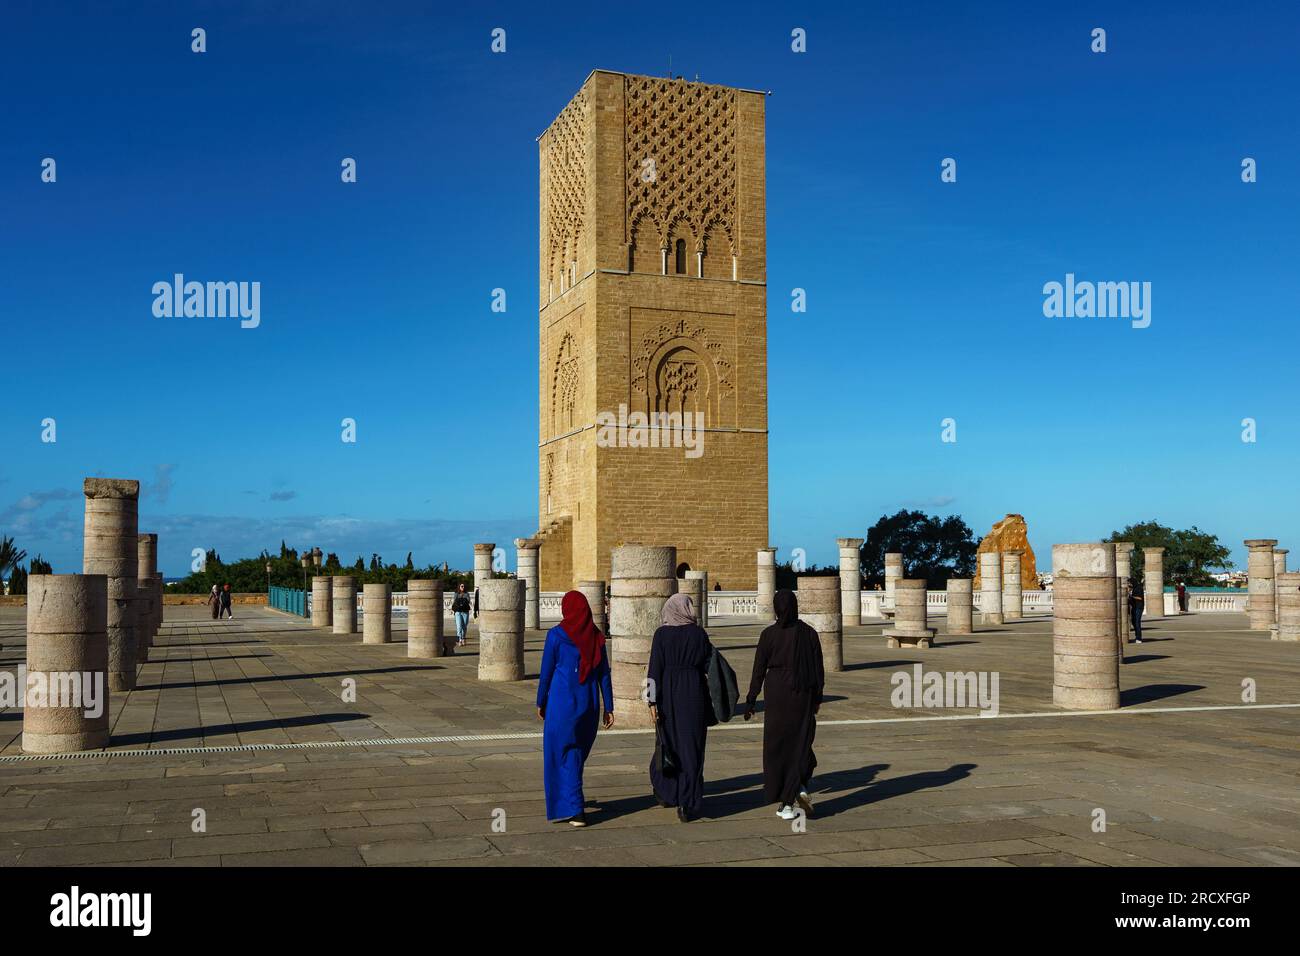 Maroc. Rabat. Un groupe de femmes se promènent devant la magnifique Tour Hassan et ses colonnes de pierre sur l’esplanade Yacoub al-Mansour. La tour est l'in Banque D'Images